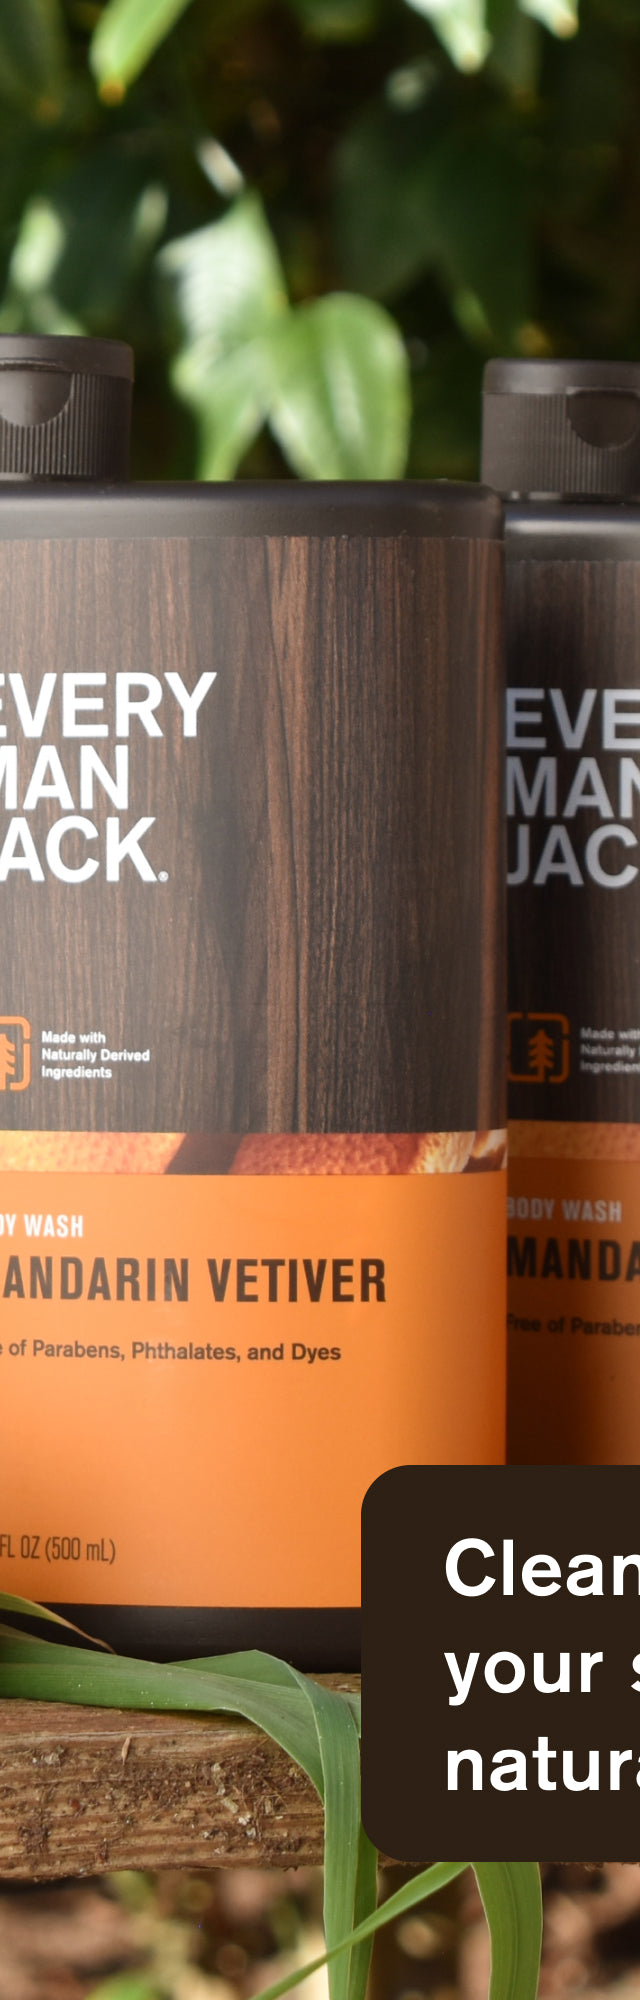 Mandarin Vetiver / Standard (43897354846370)